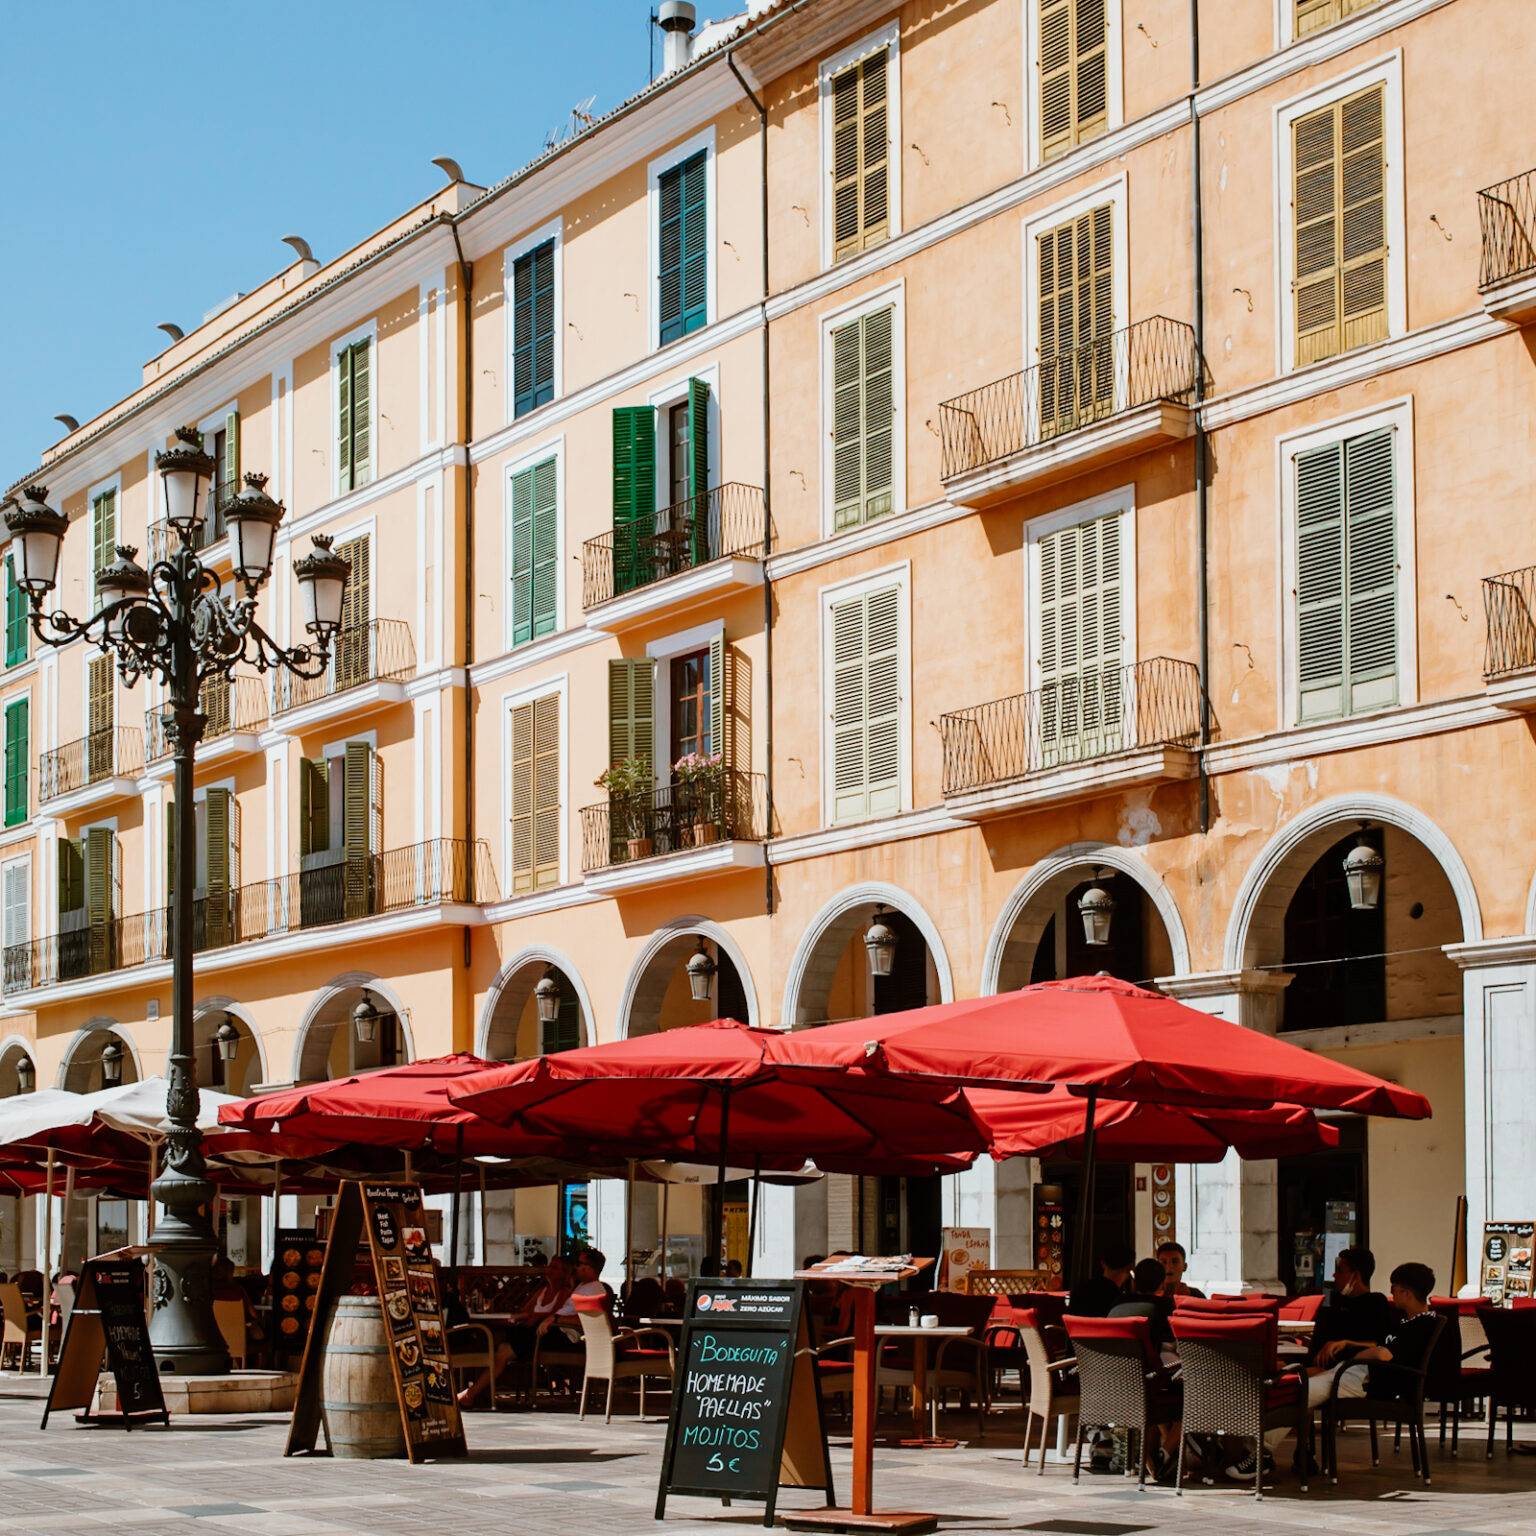 Der große Platz Plaza Mayor mit sandfarbigen Häuserwänden und roten Restaurantschirmen in Palma.